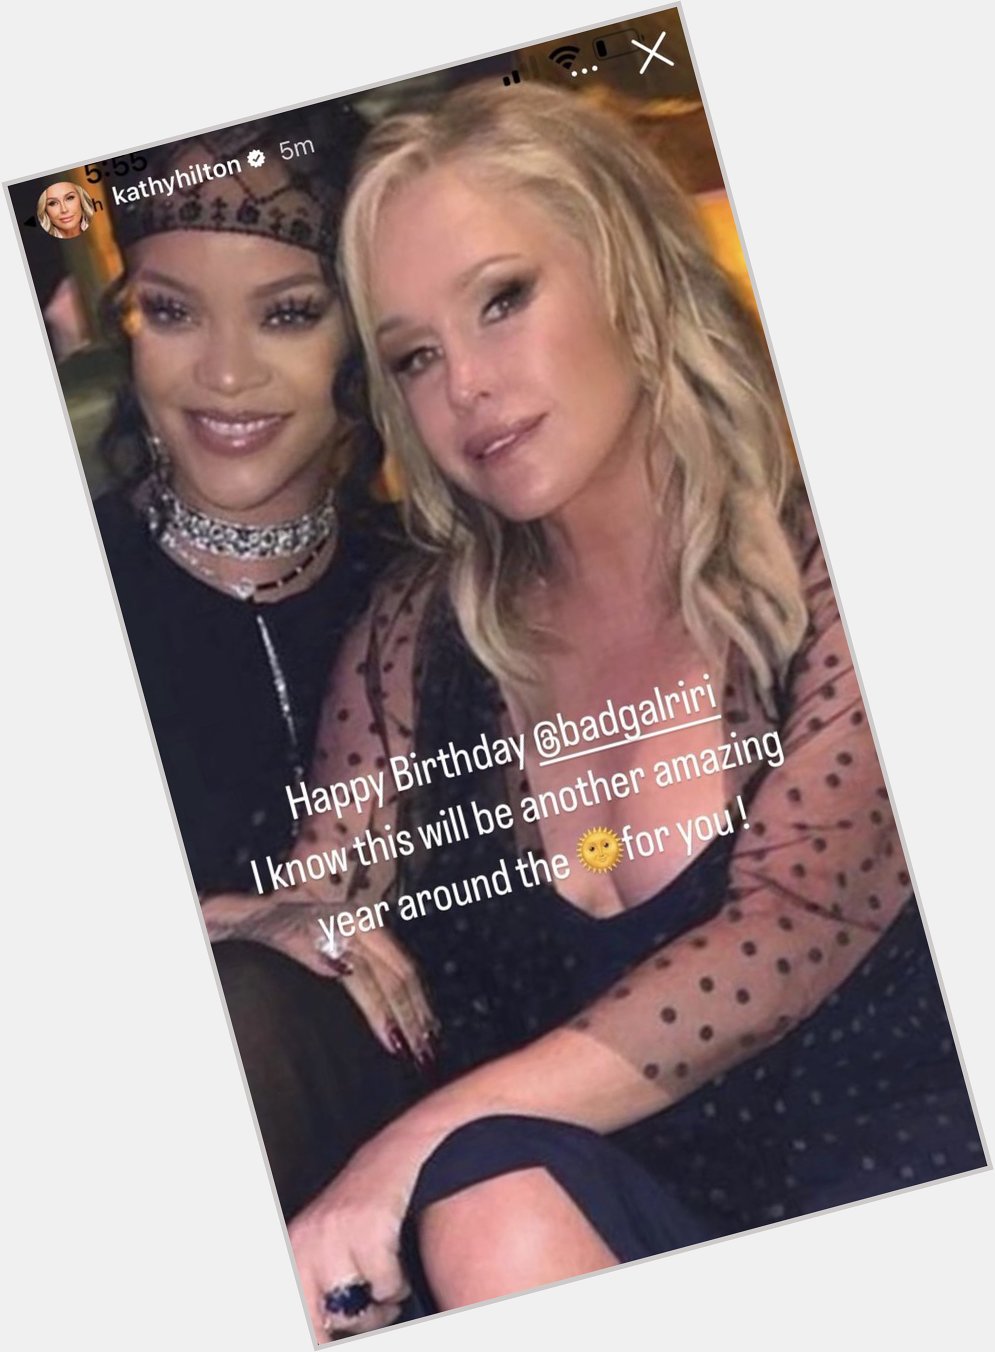 Kathy wishes Rihanna a Happy Birthday  